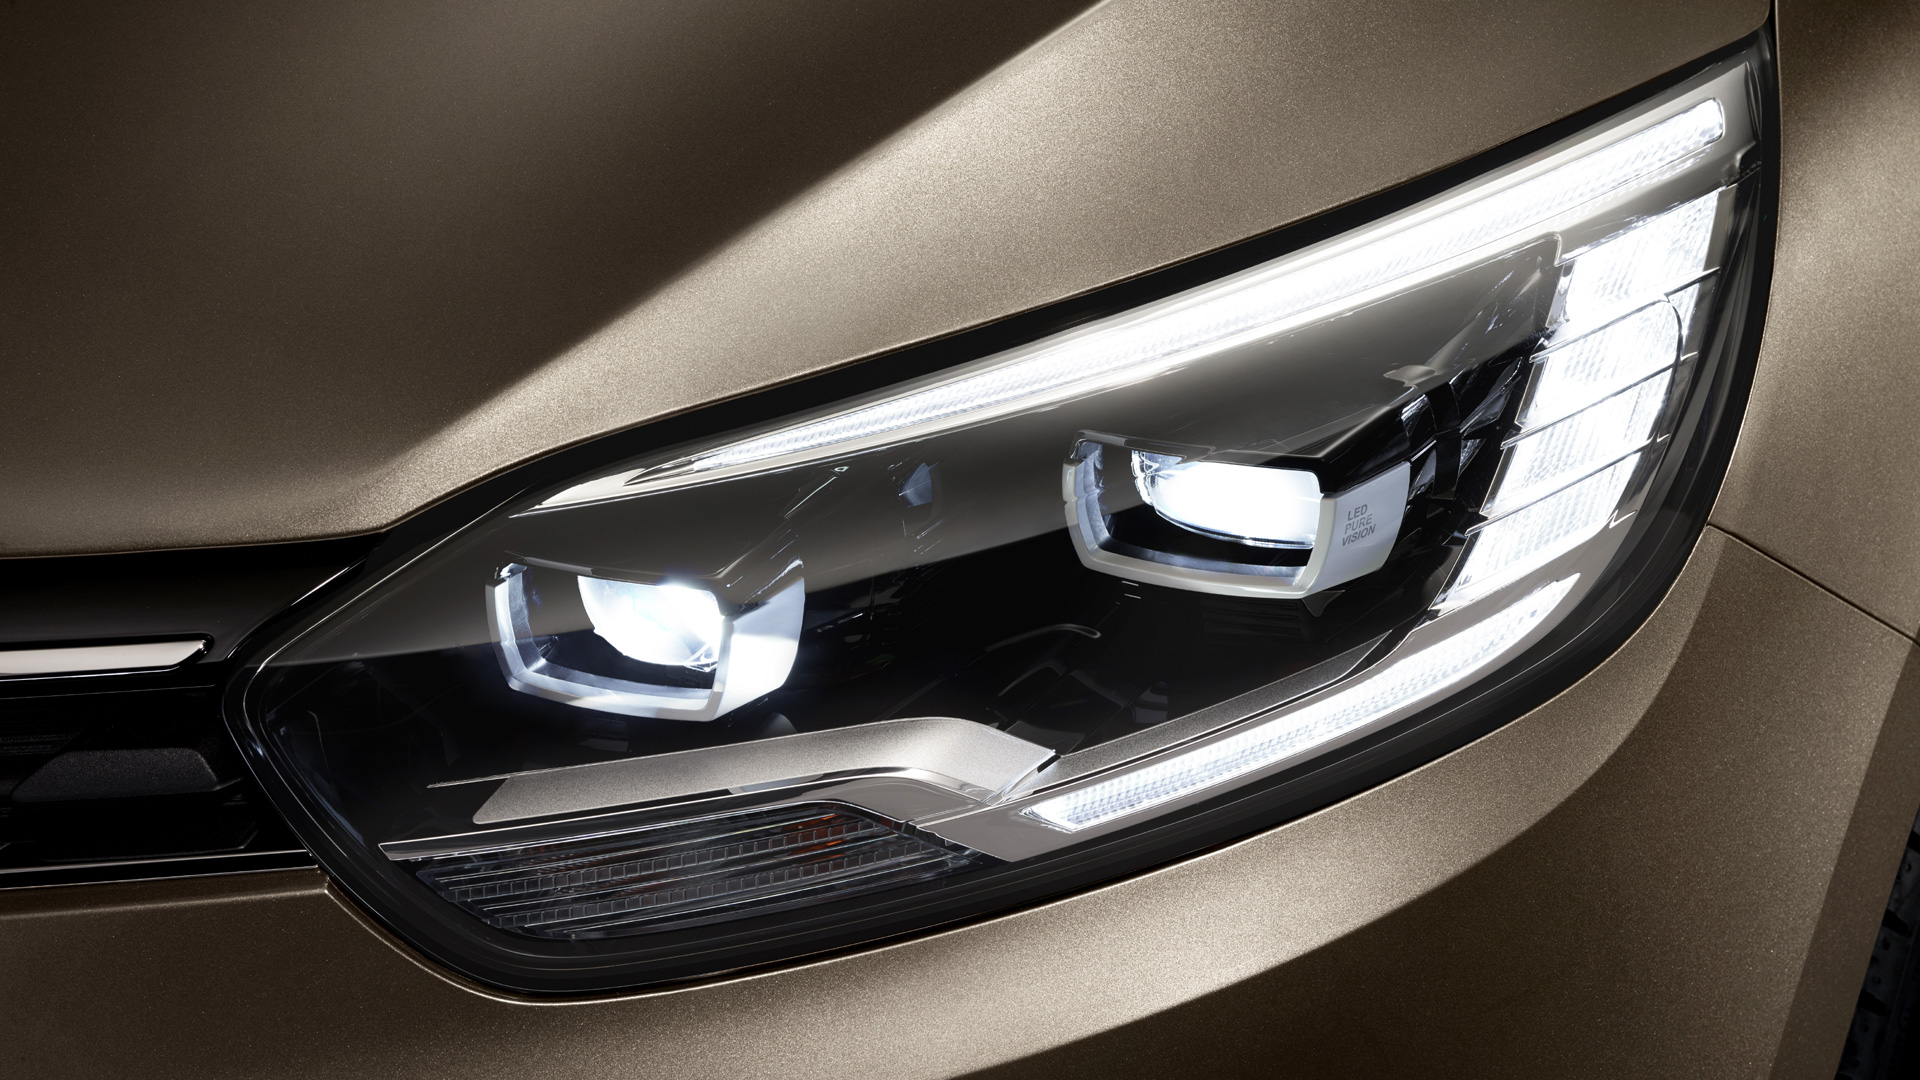 2016 Renault Grand Scenic headlight